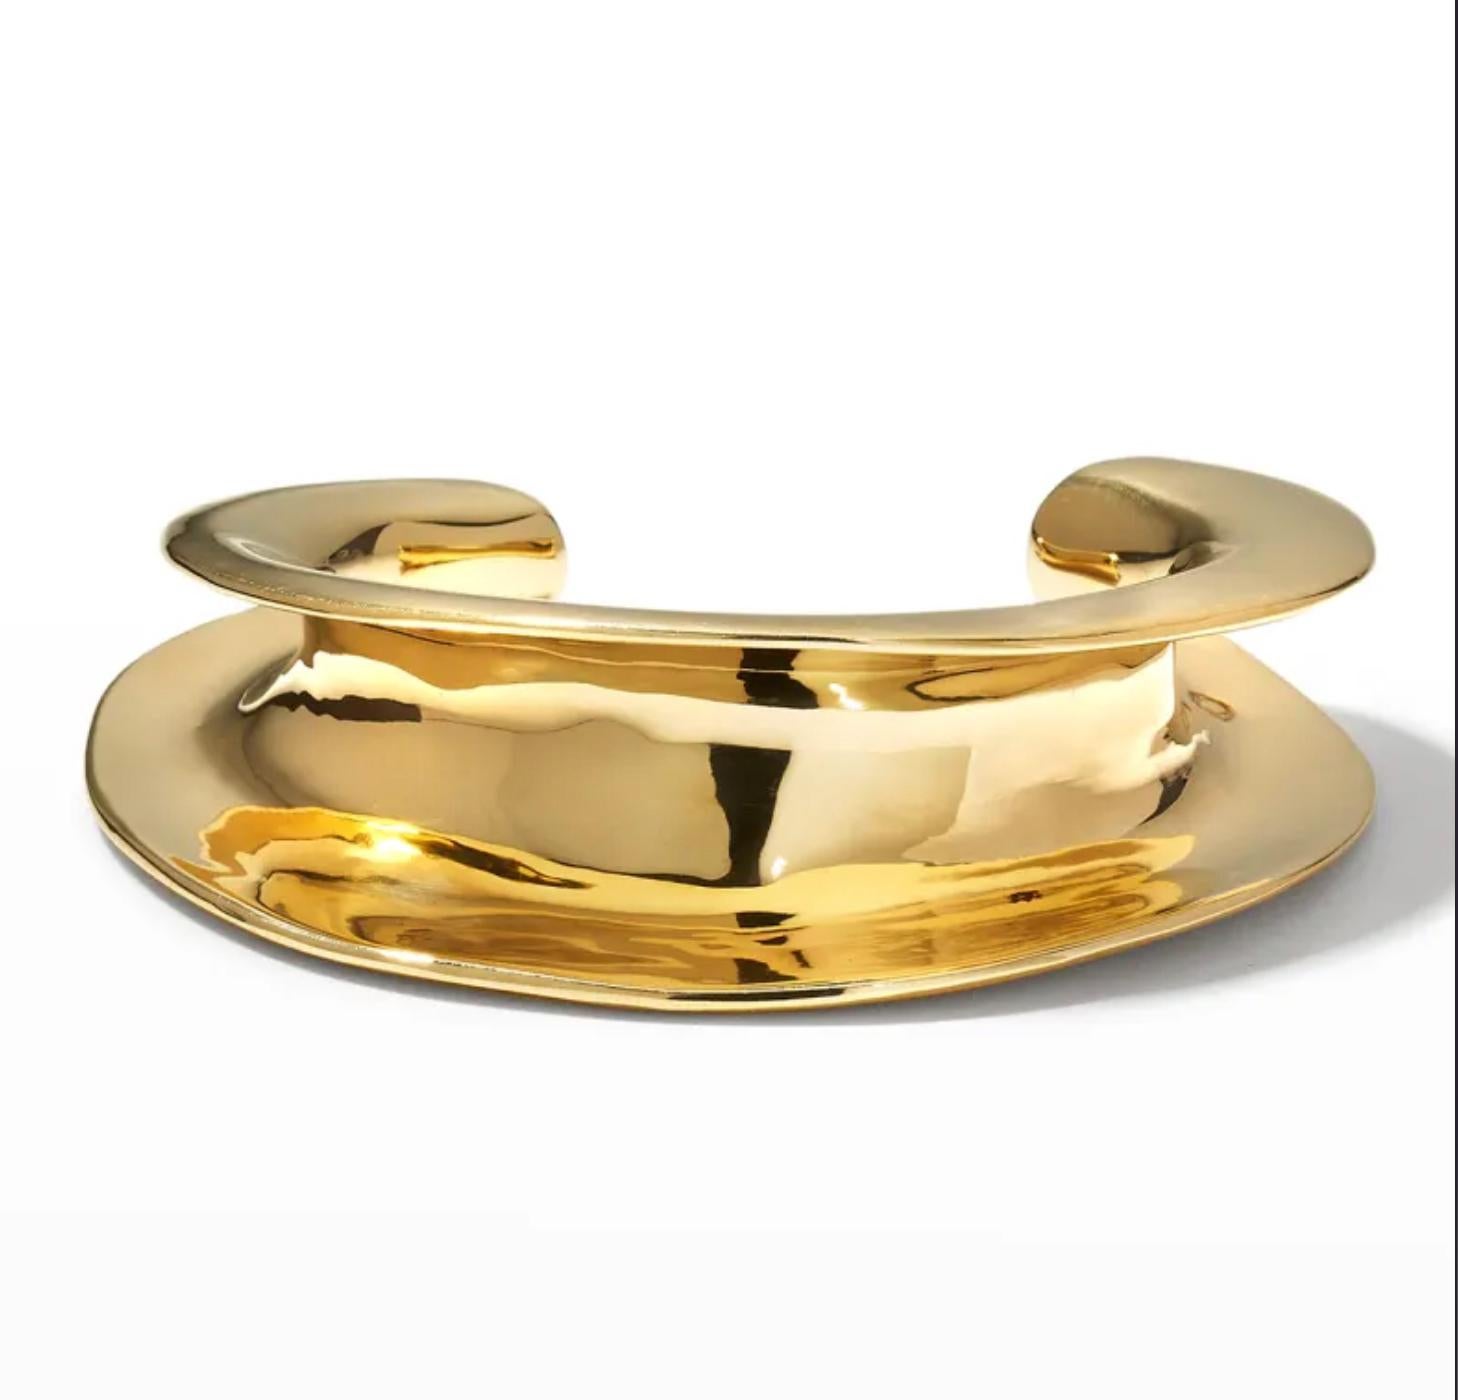 Ariana Boussard-Reifel Bast Gold Bronze Sculptural Modern Cuff Bracelet For Sale 4